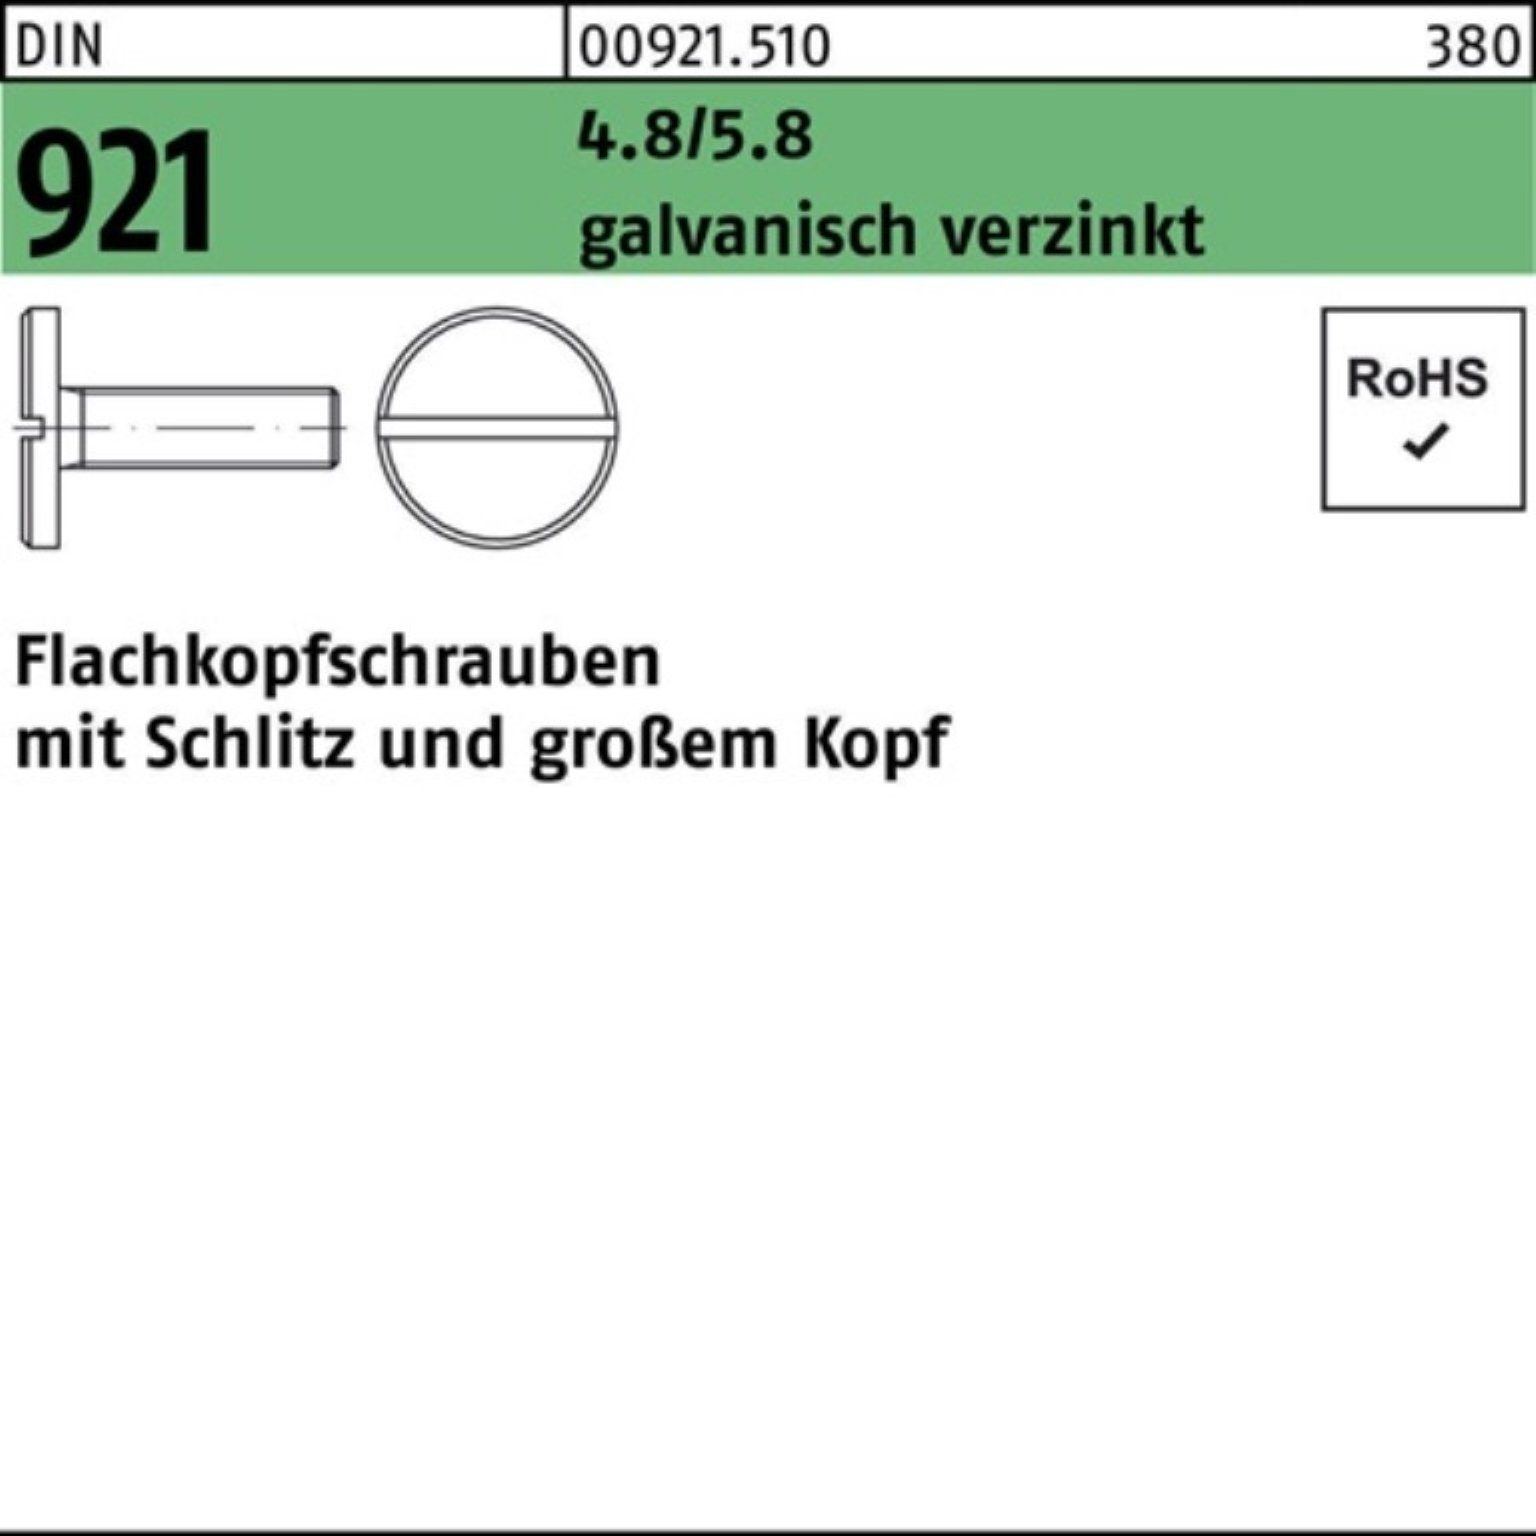 Reyher Flachkopfschraube 20 4.8/5.8 Schraube 100er 921 DIN Schlitz M10x galv.verz Pack